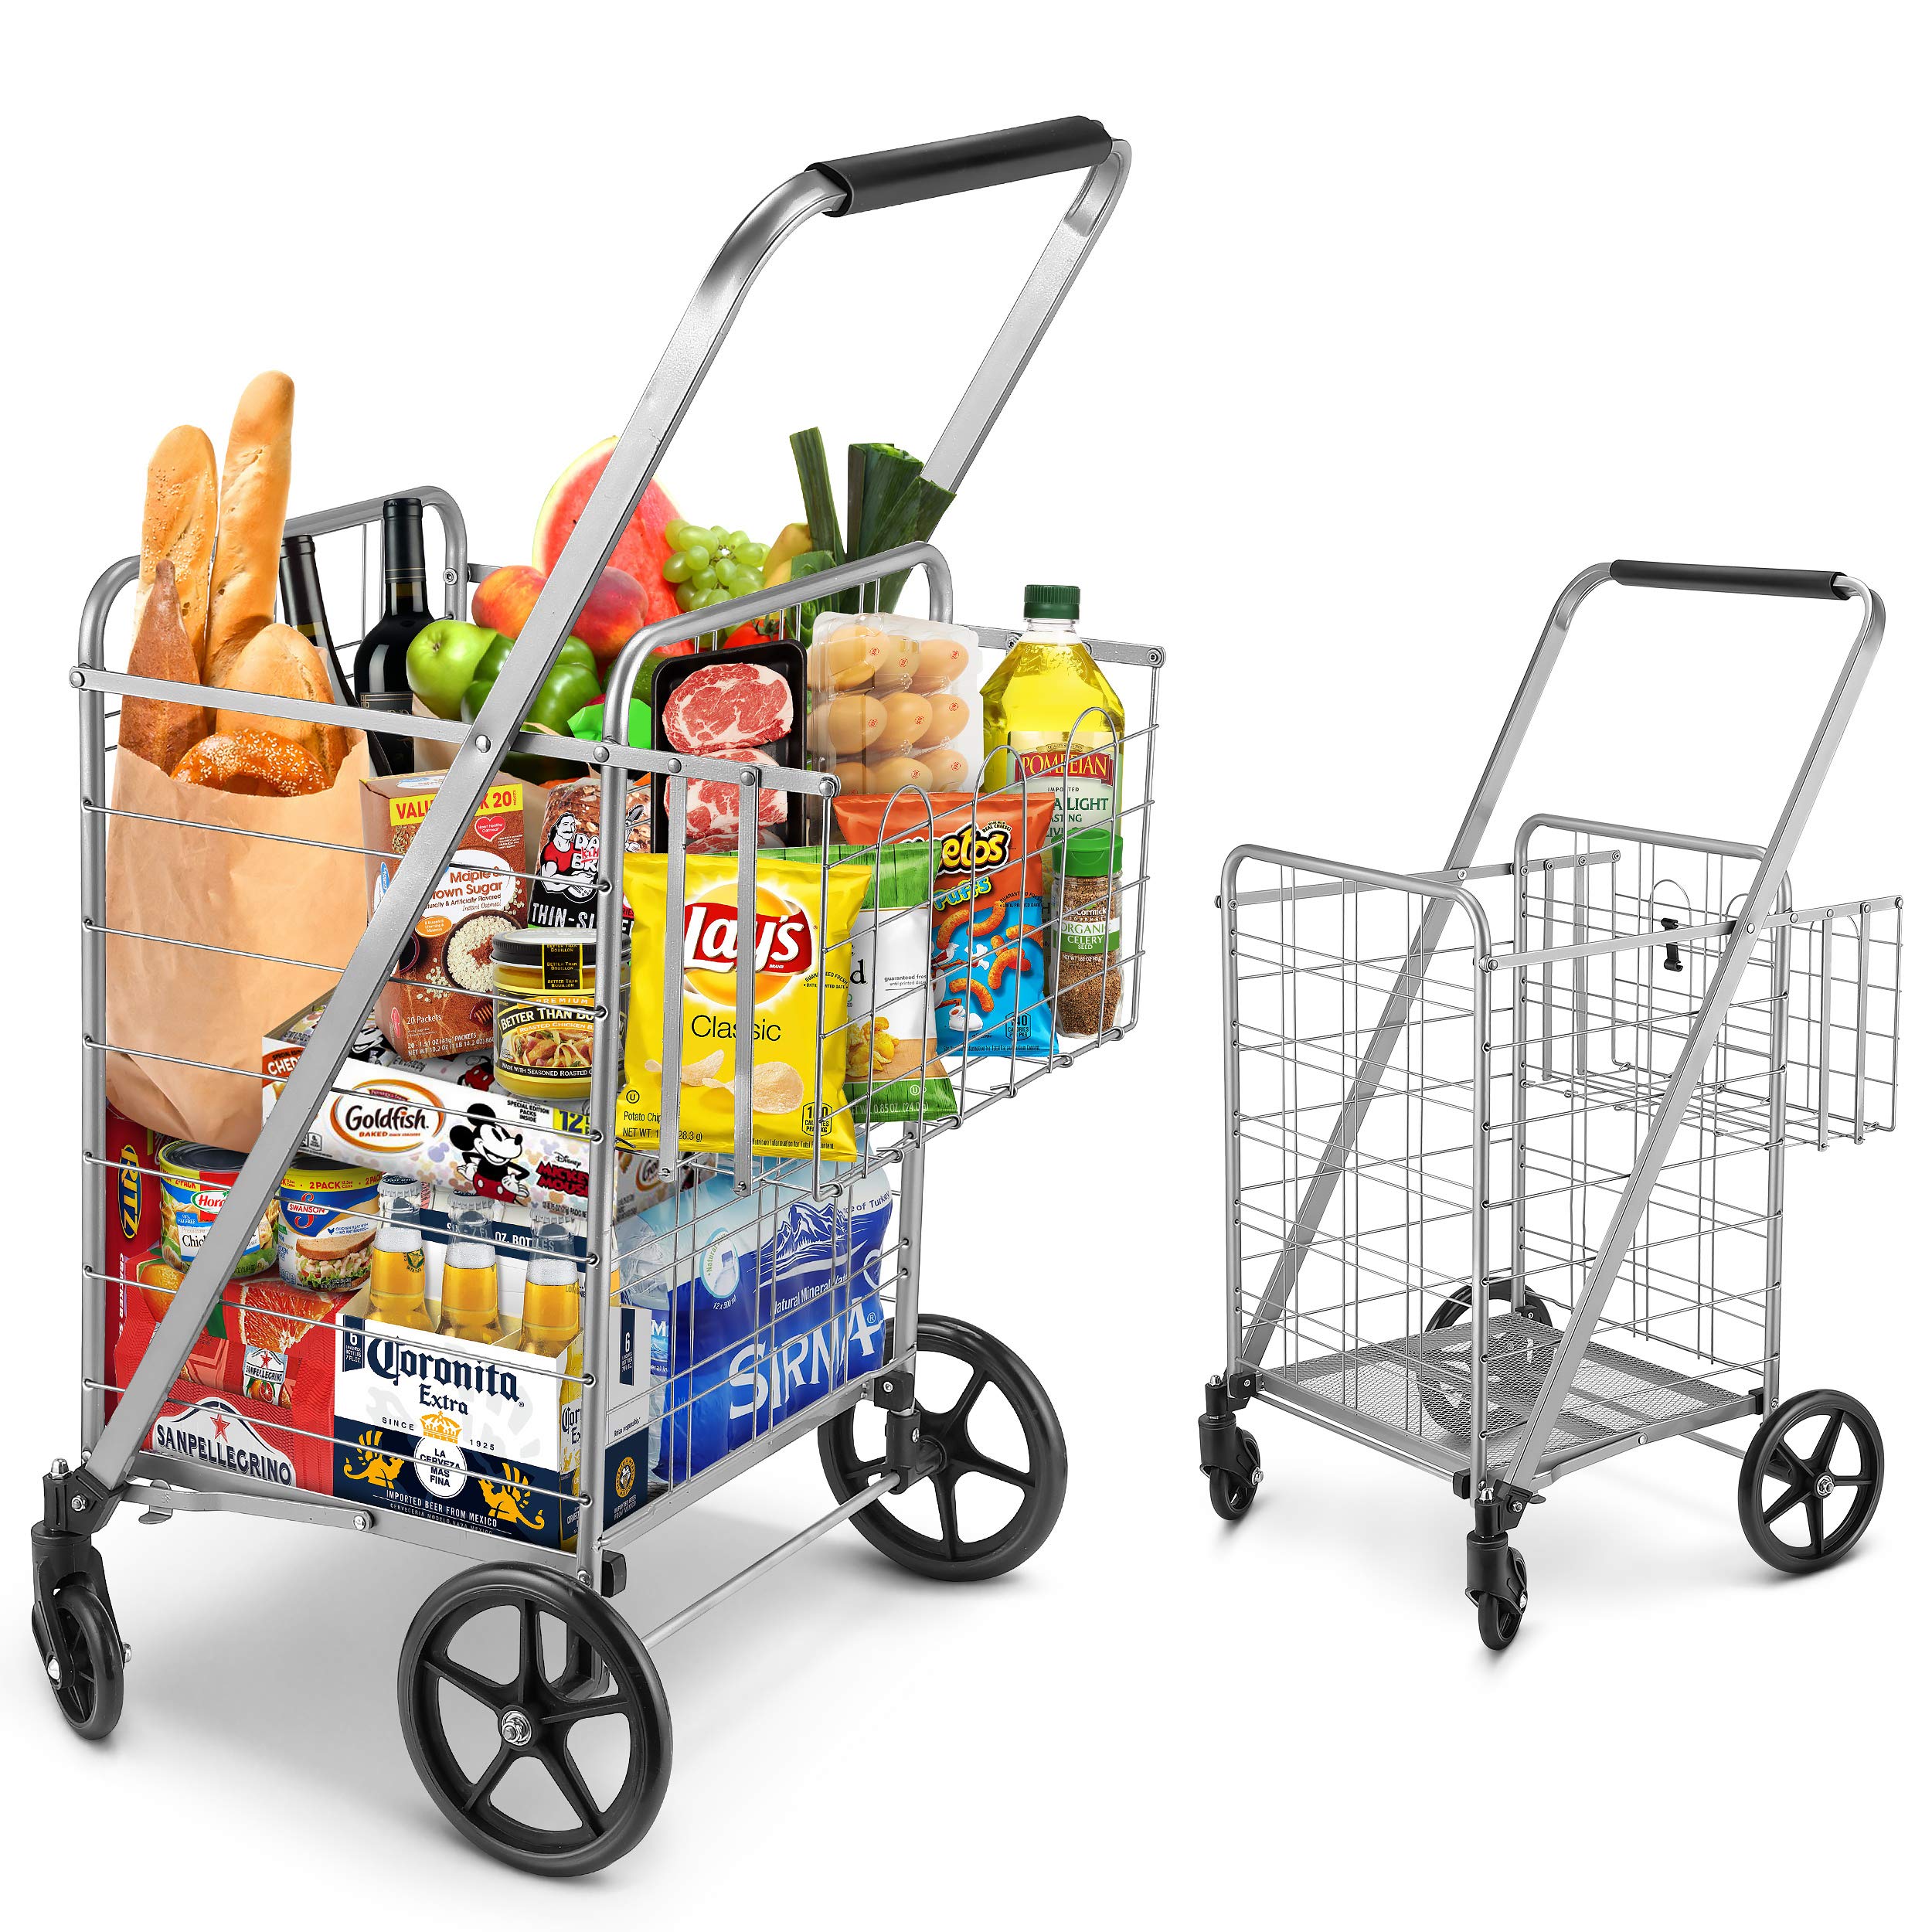 Online shopping cart